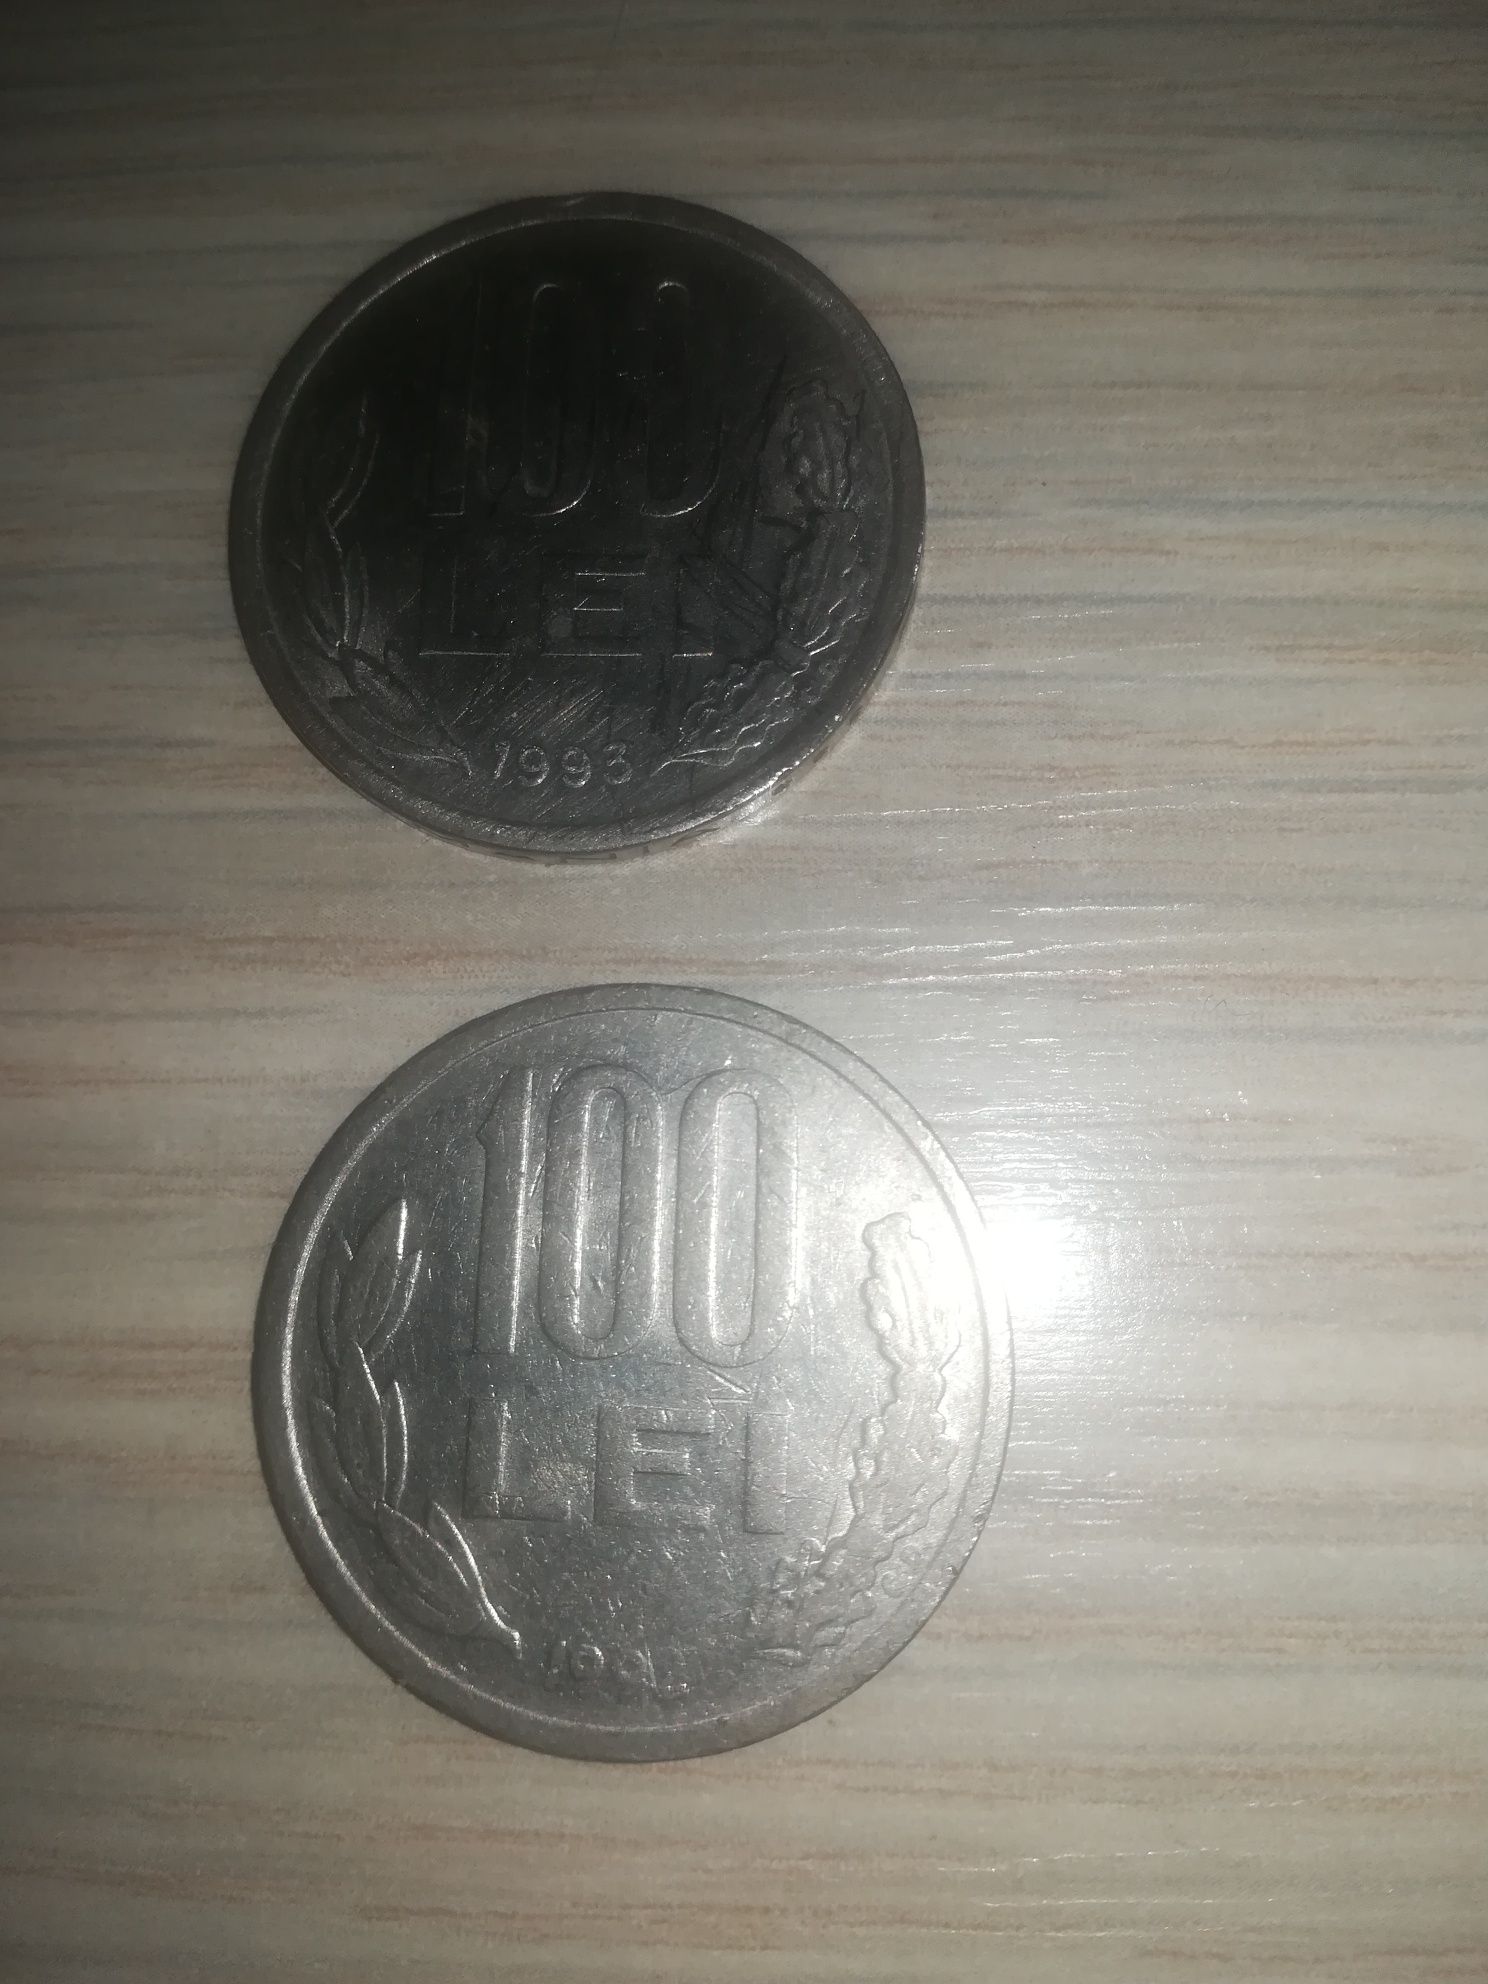 2 monede 100 lei, una din 1992 și una din 1993